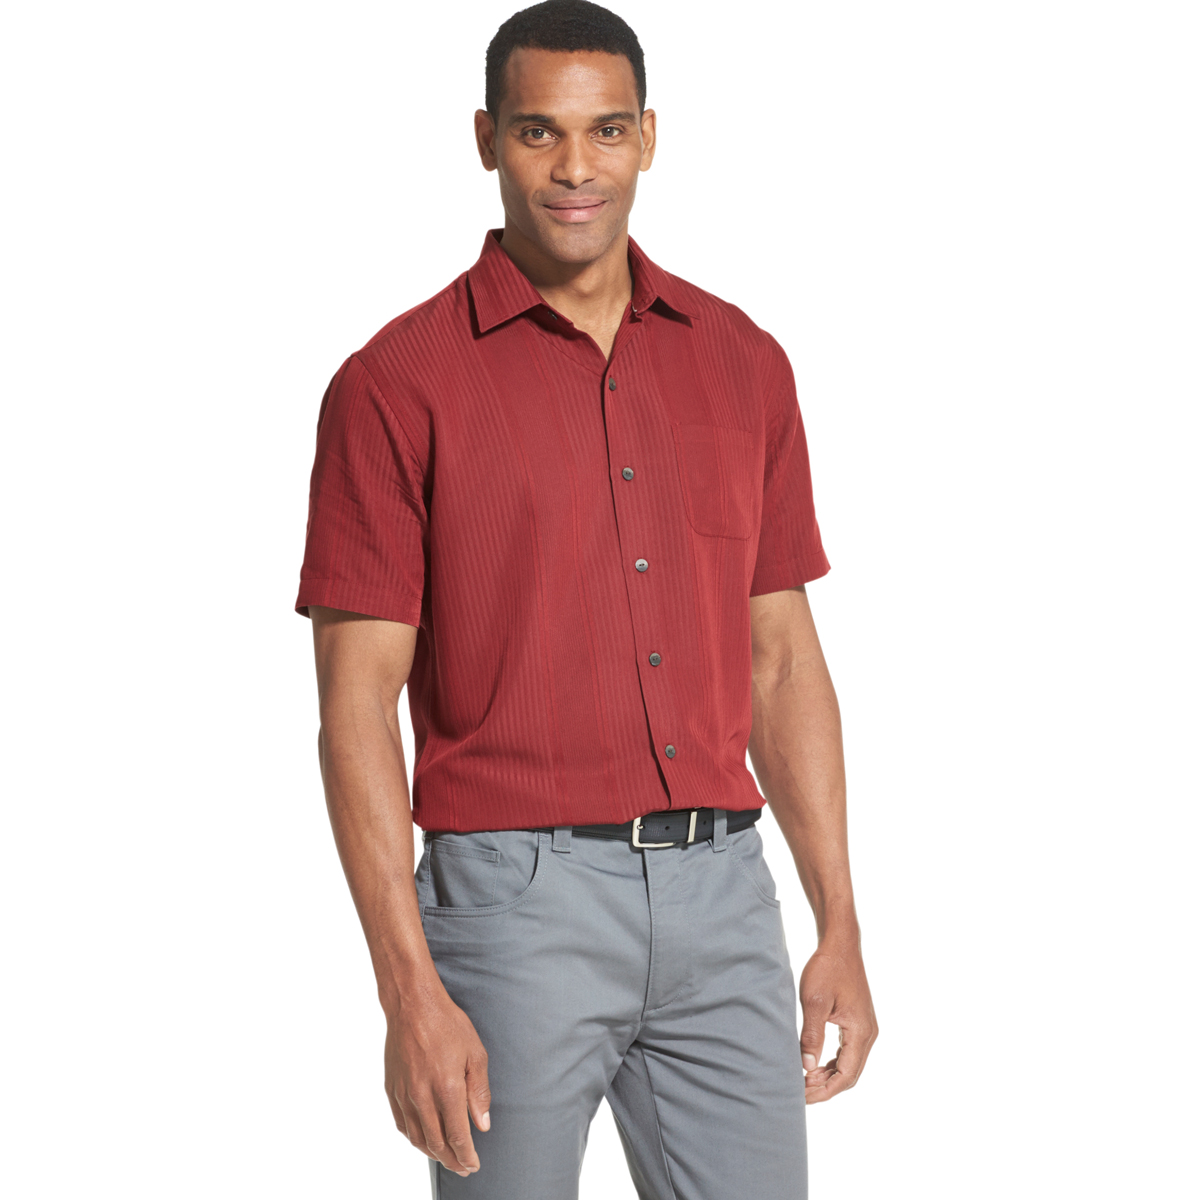 Van Heusen Men's Air Non-Iron Short-Sleeve Shirt - Red, L